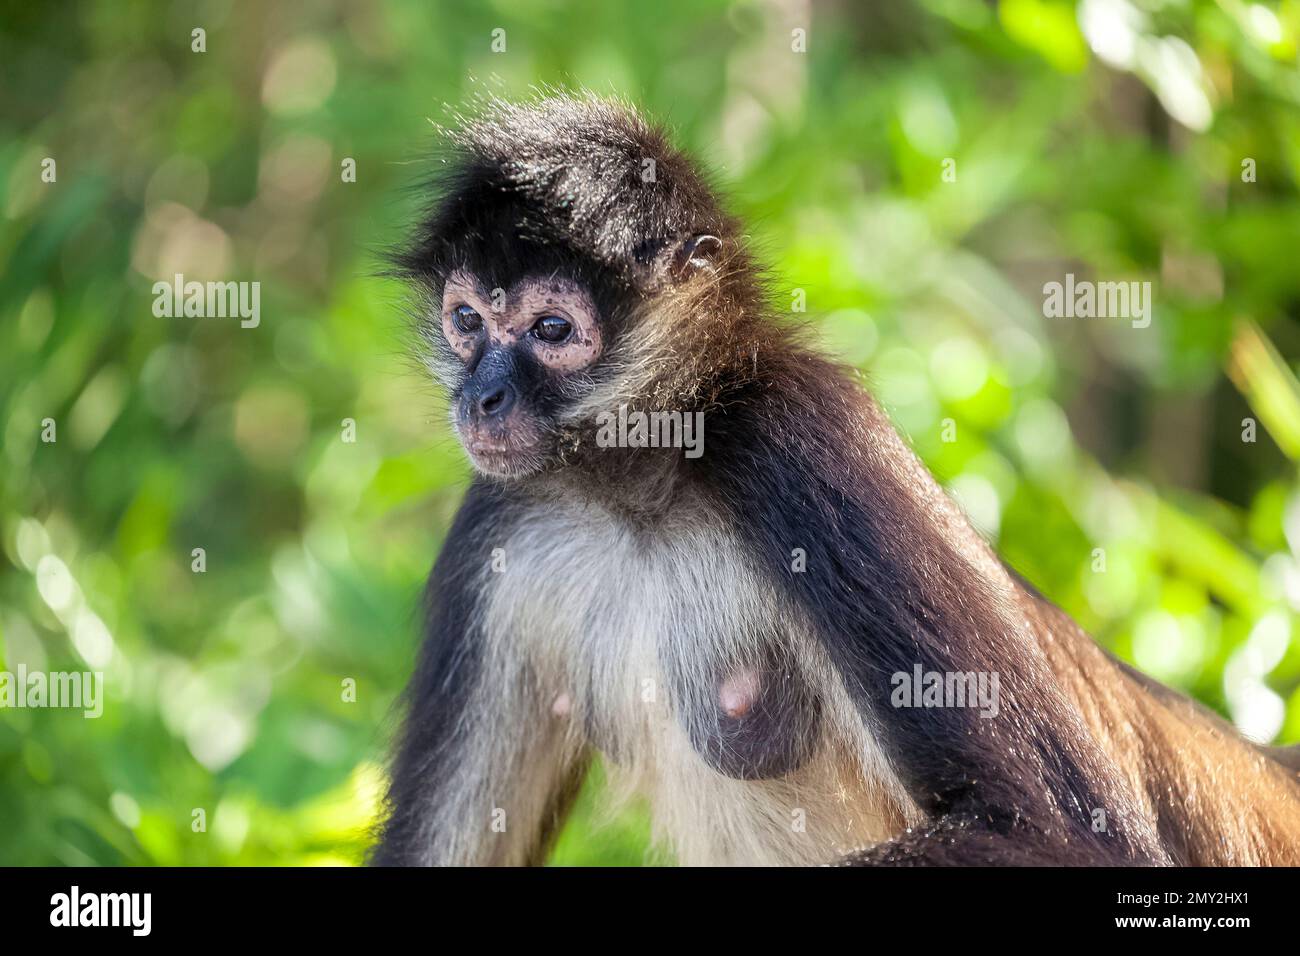 Spider monkey, Yucatán Peninsula, Mexico Stock Photo